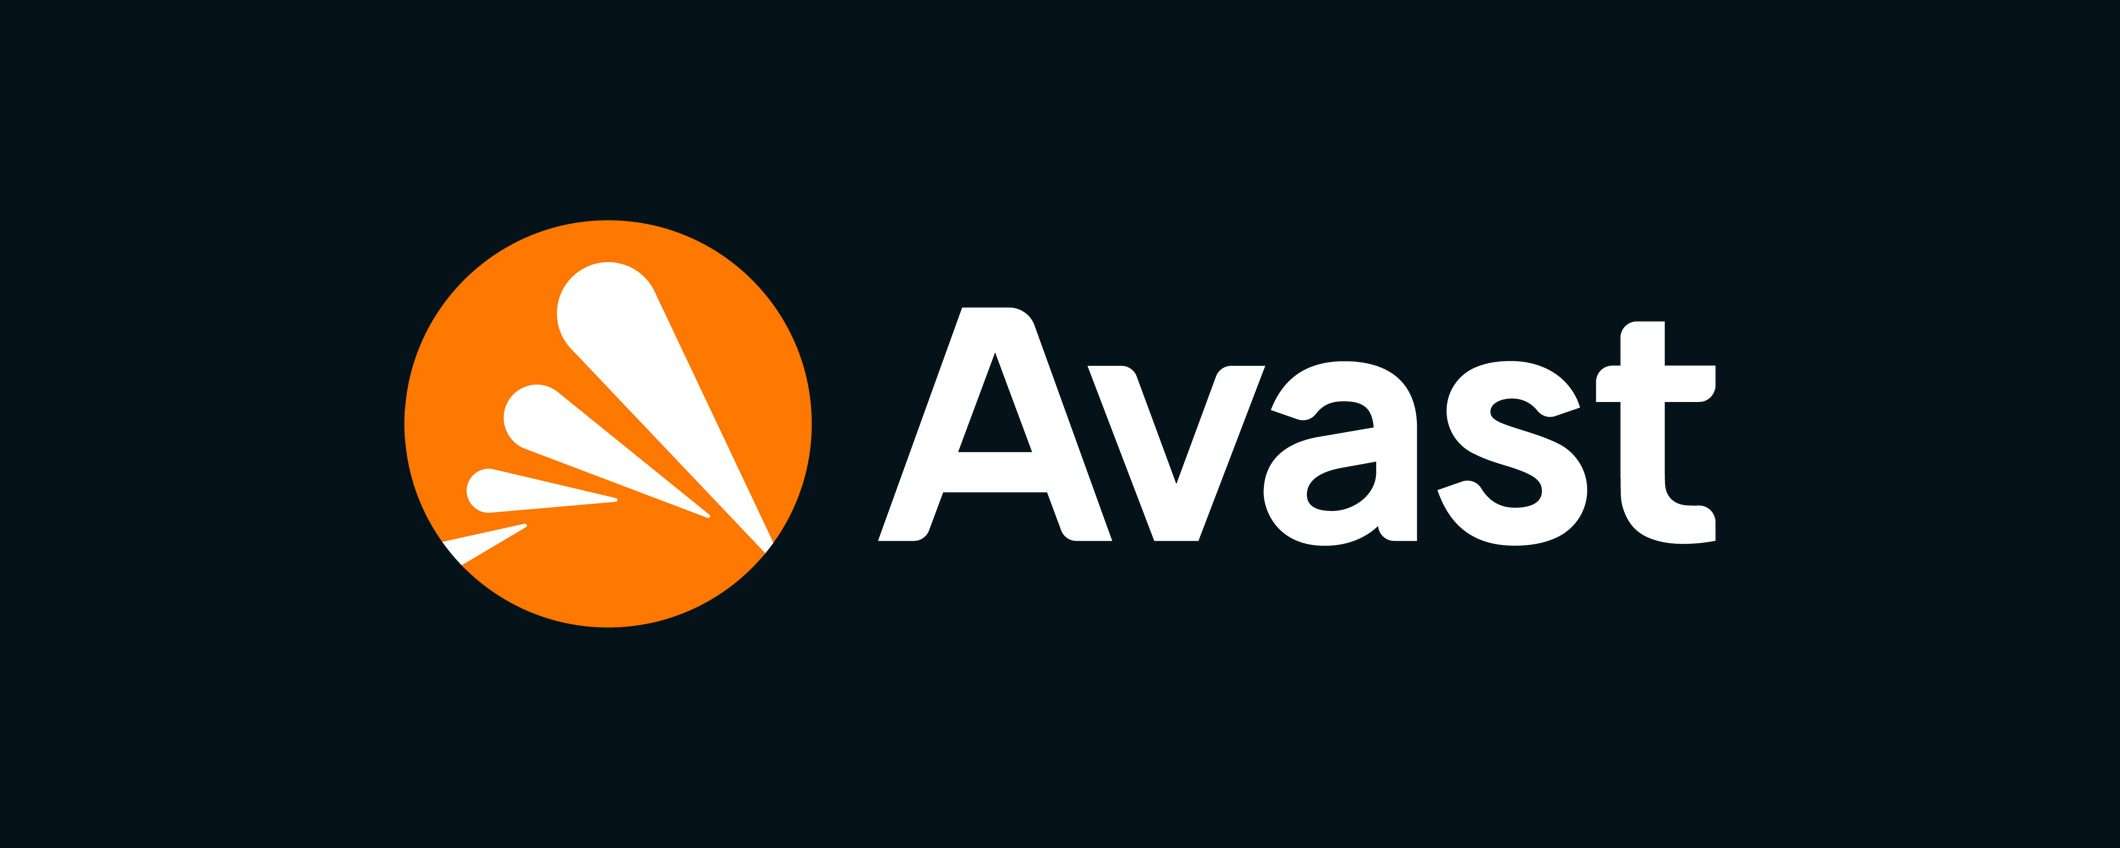 Avast Ransomware Shield per proteggere i file